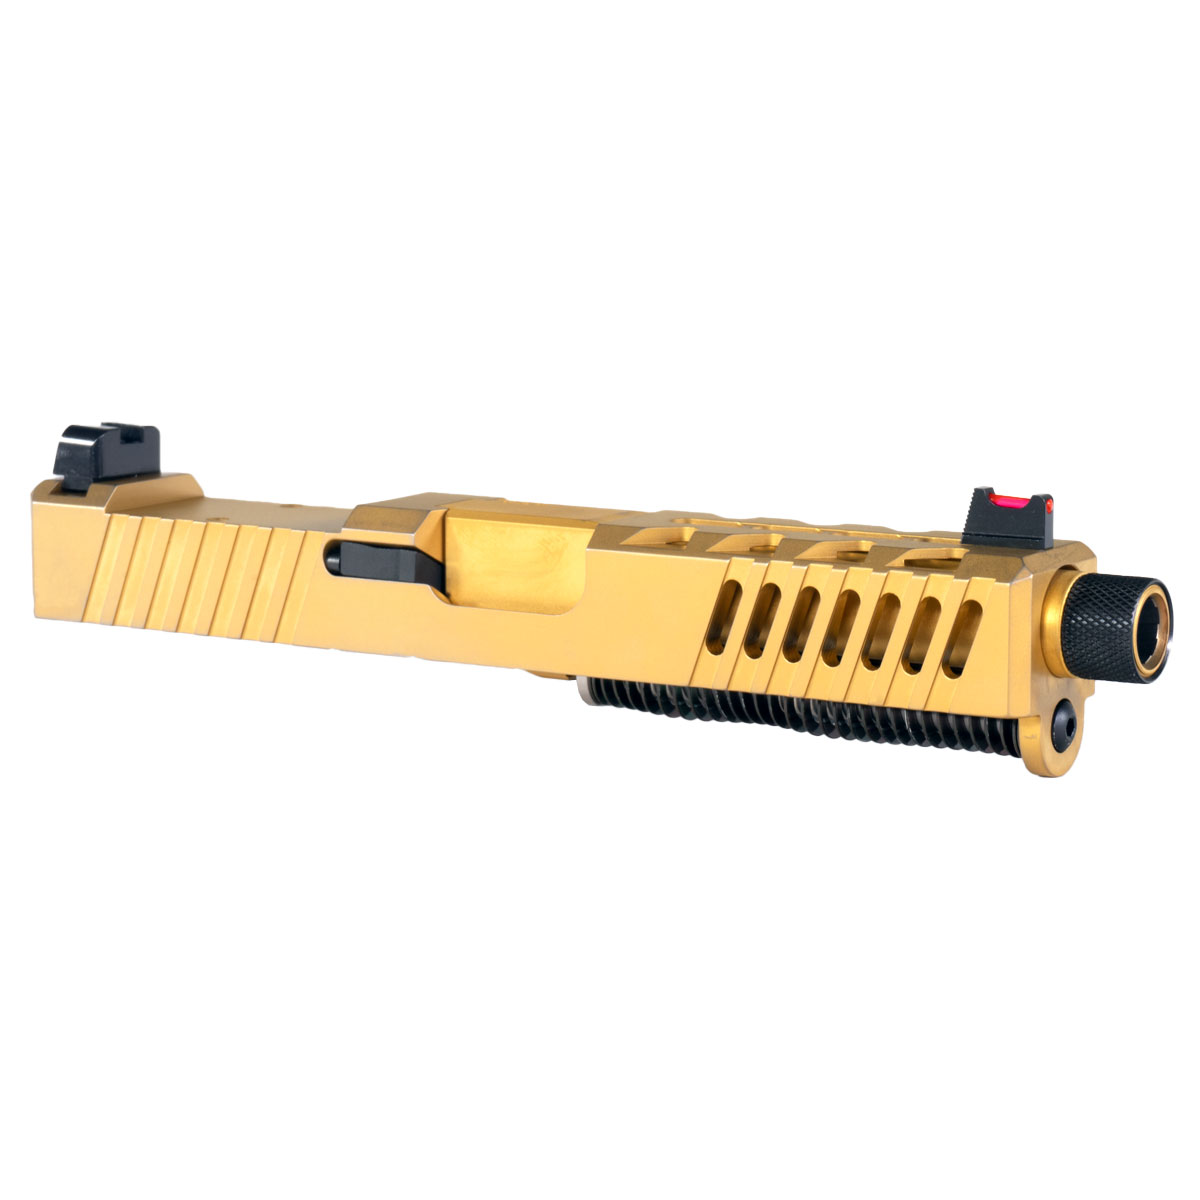 DDS 'AU-197' 9mm Complete Slide Kit - Glock 19 Compatible